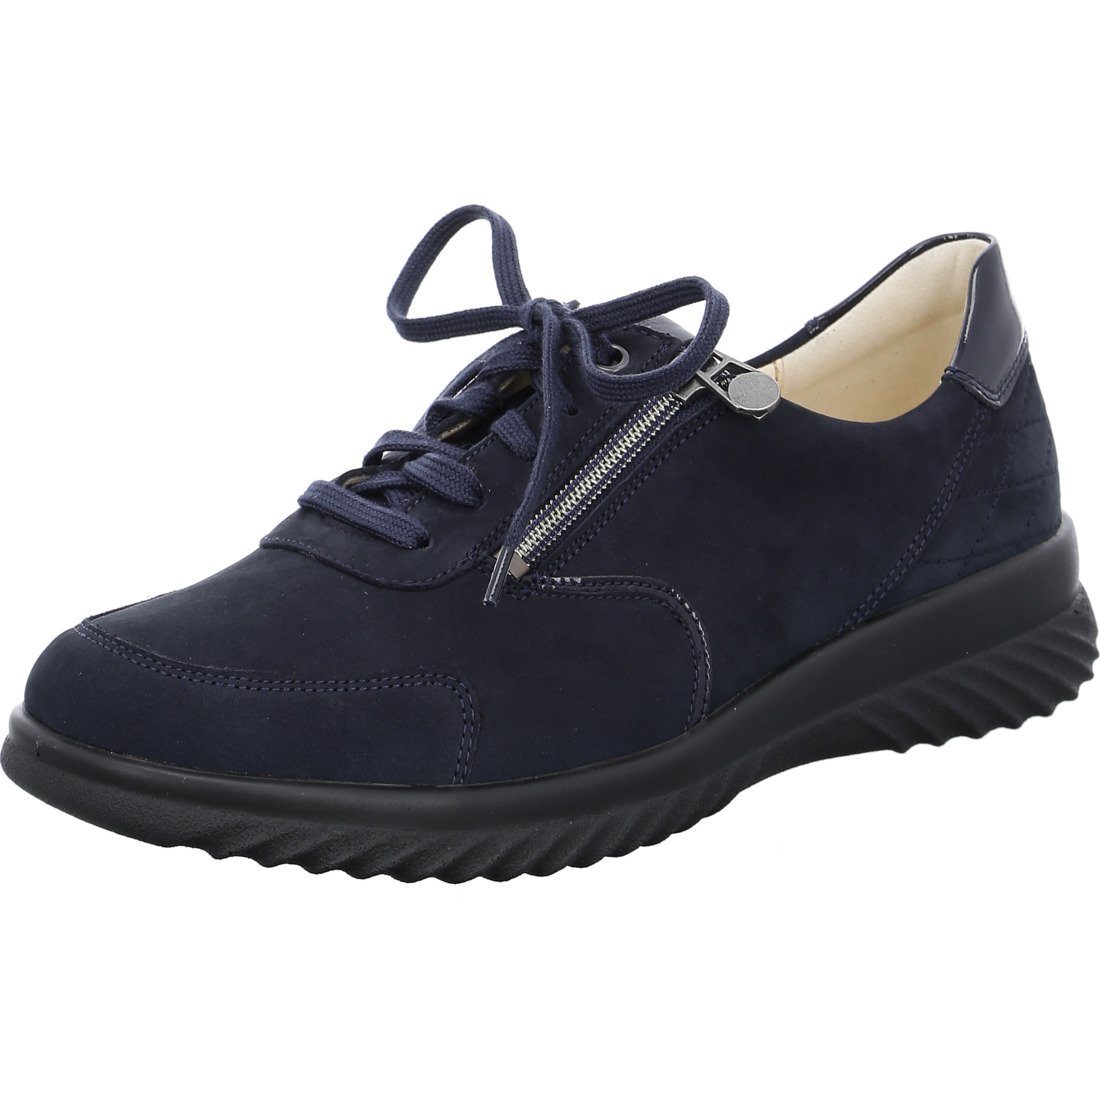 Ganter Ganter Schuhe, Sneaker Heike - Nubuk Damen Sneaker blau 050295